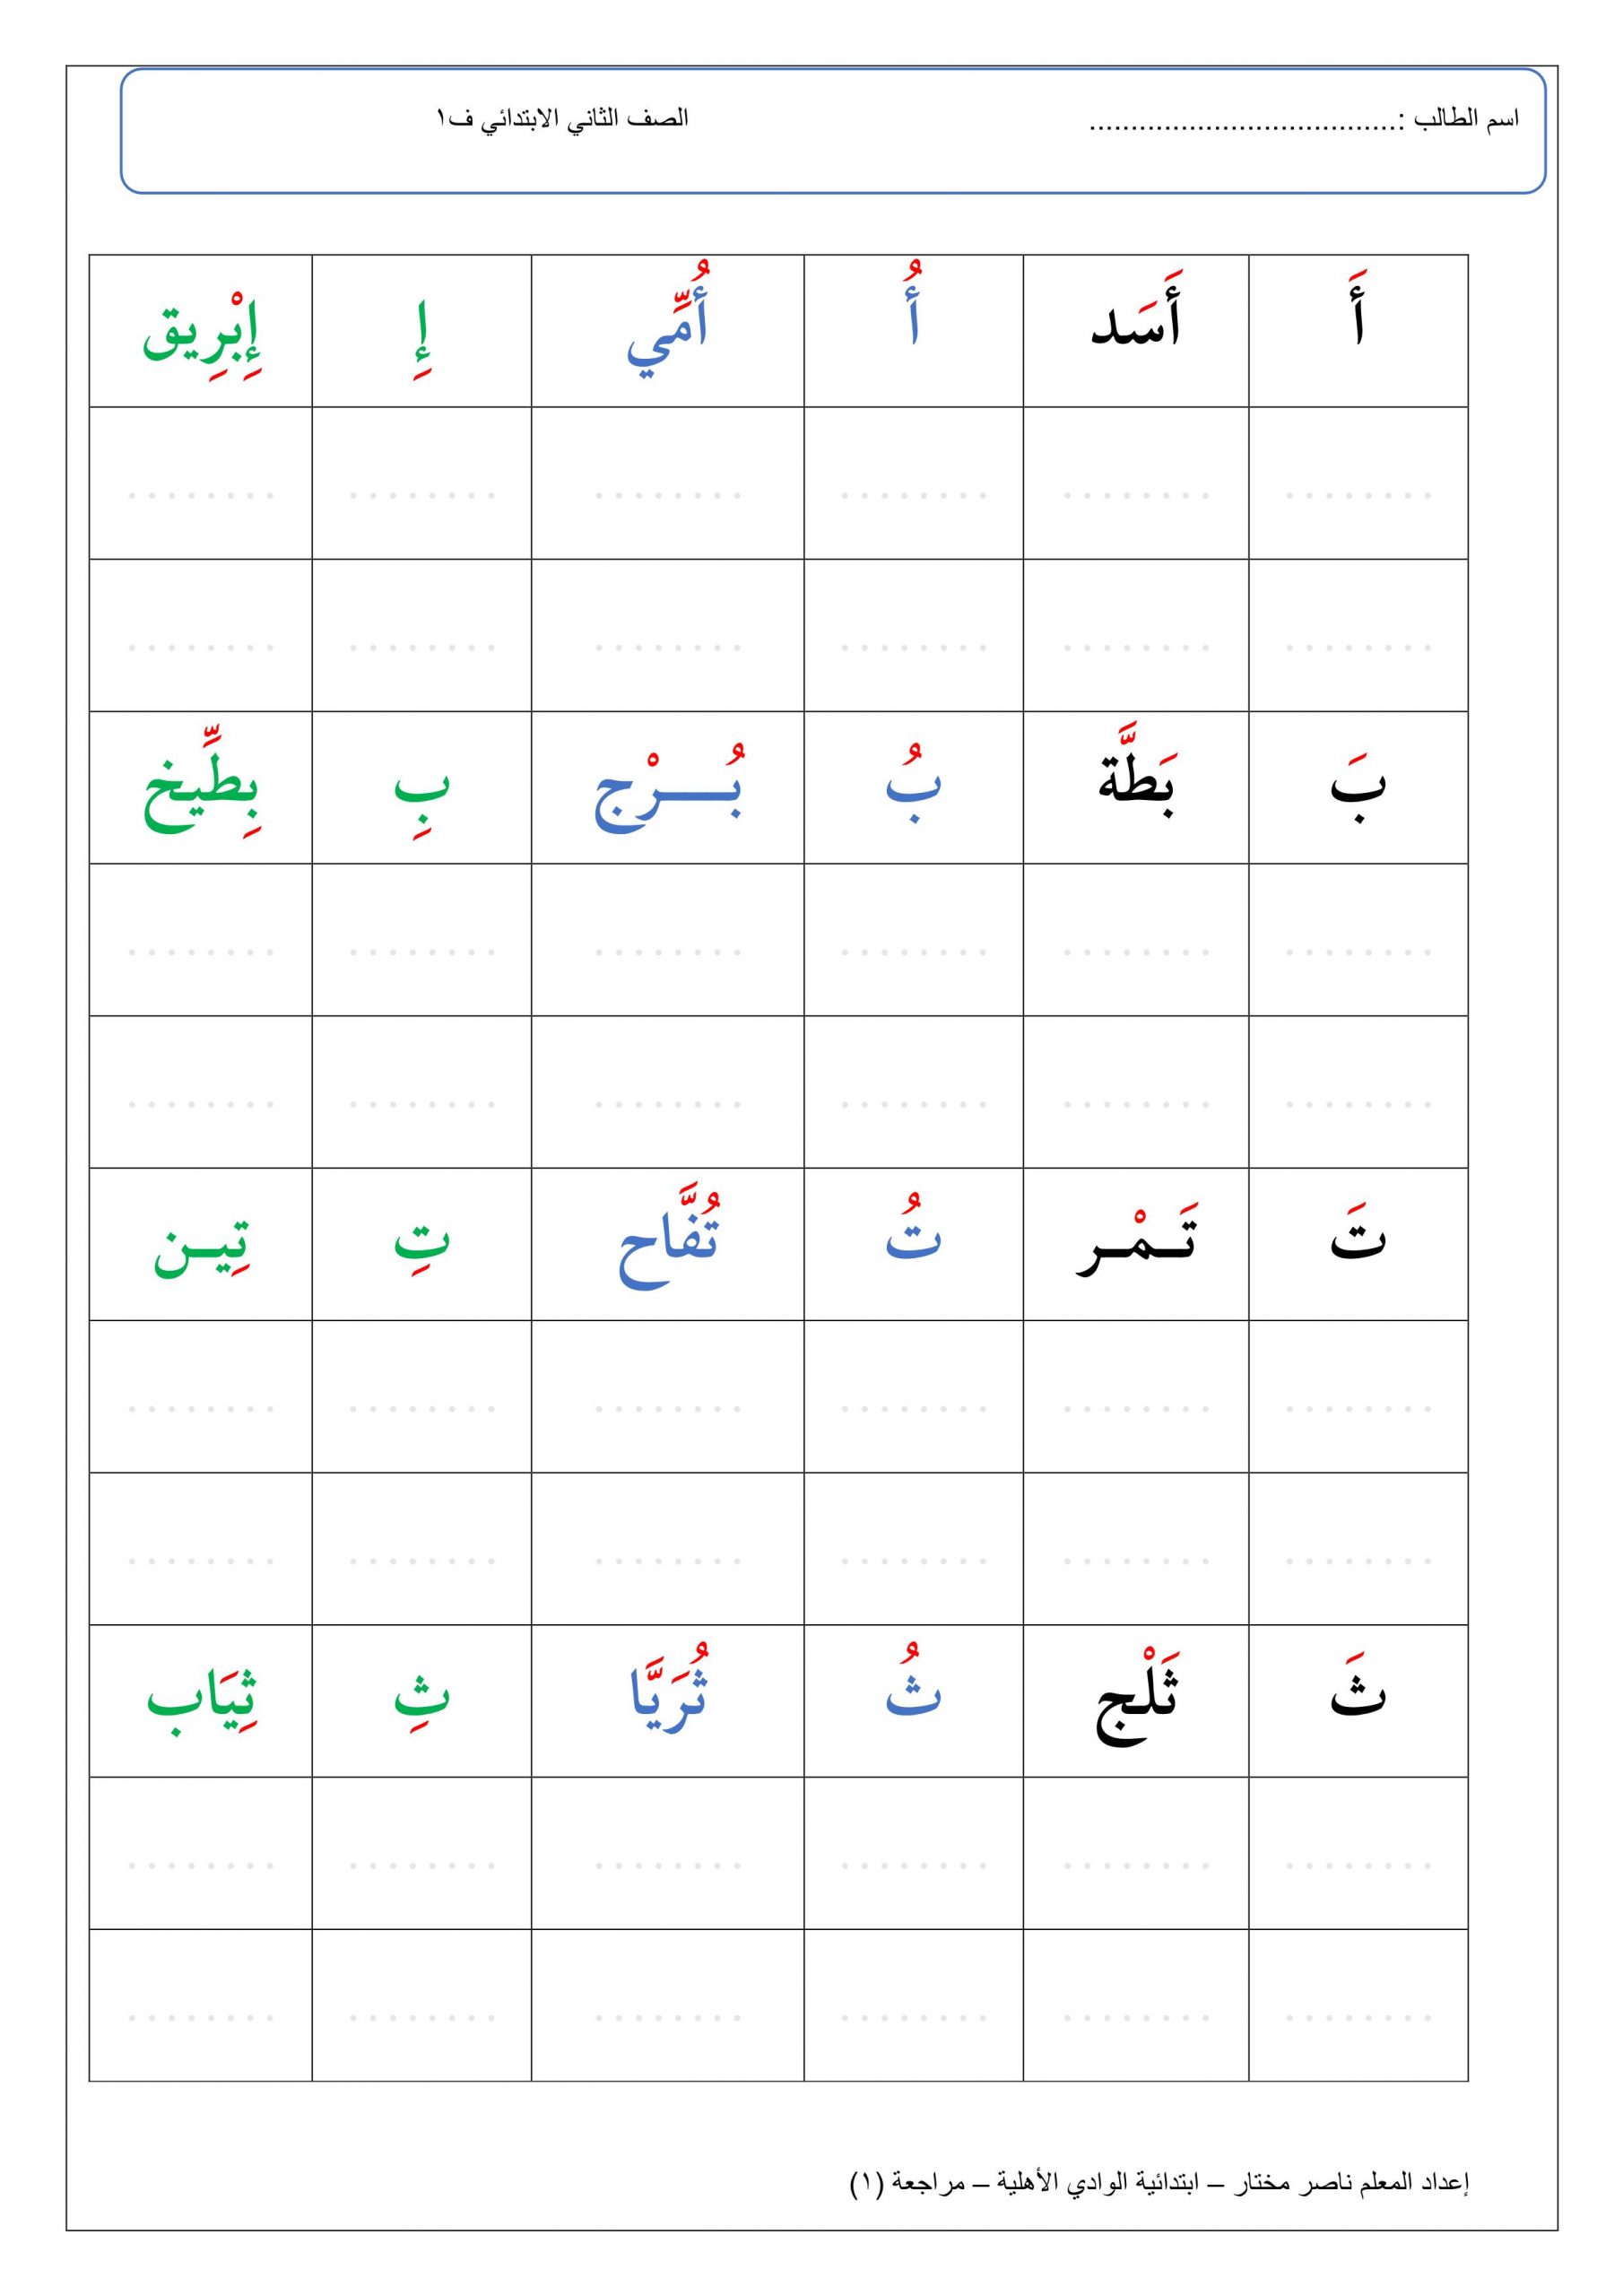 اوراق عمل مراجعة الحروف الهجائية للصف الاول مادة اللغة العربية